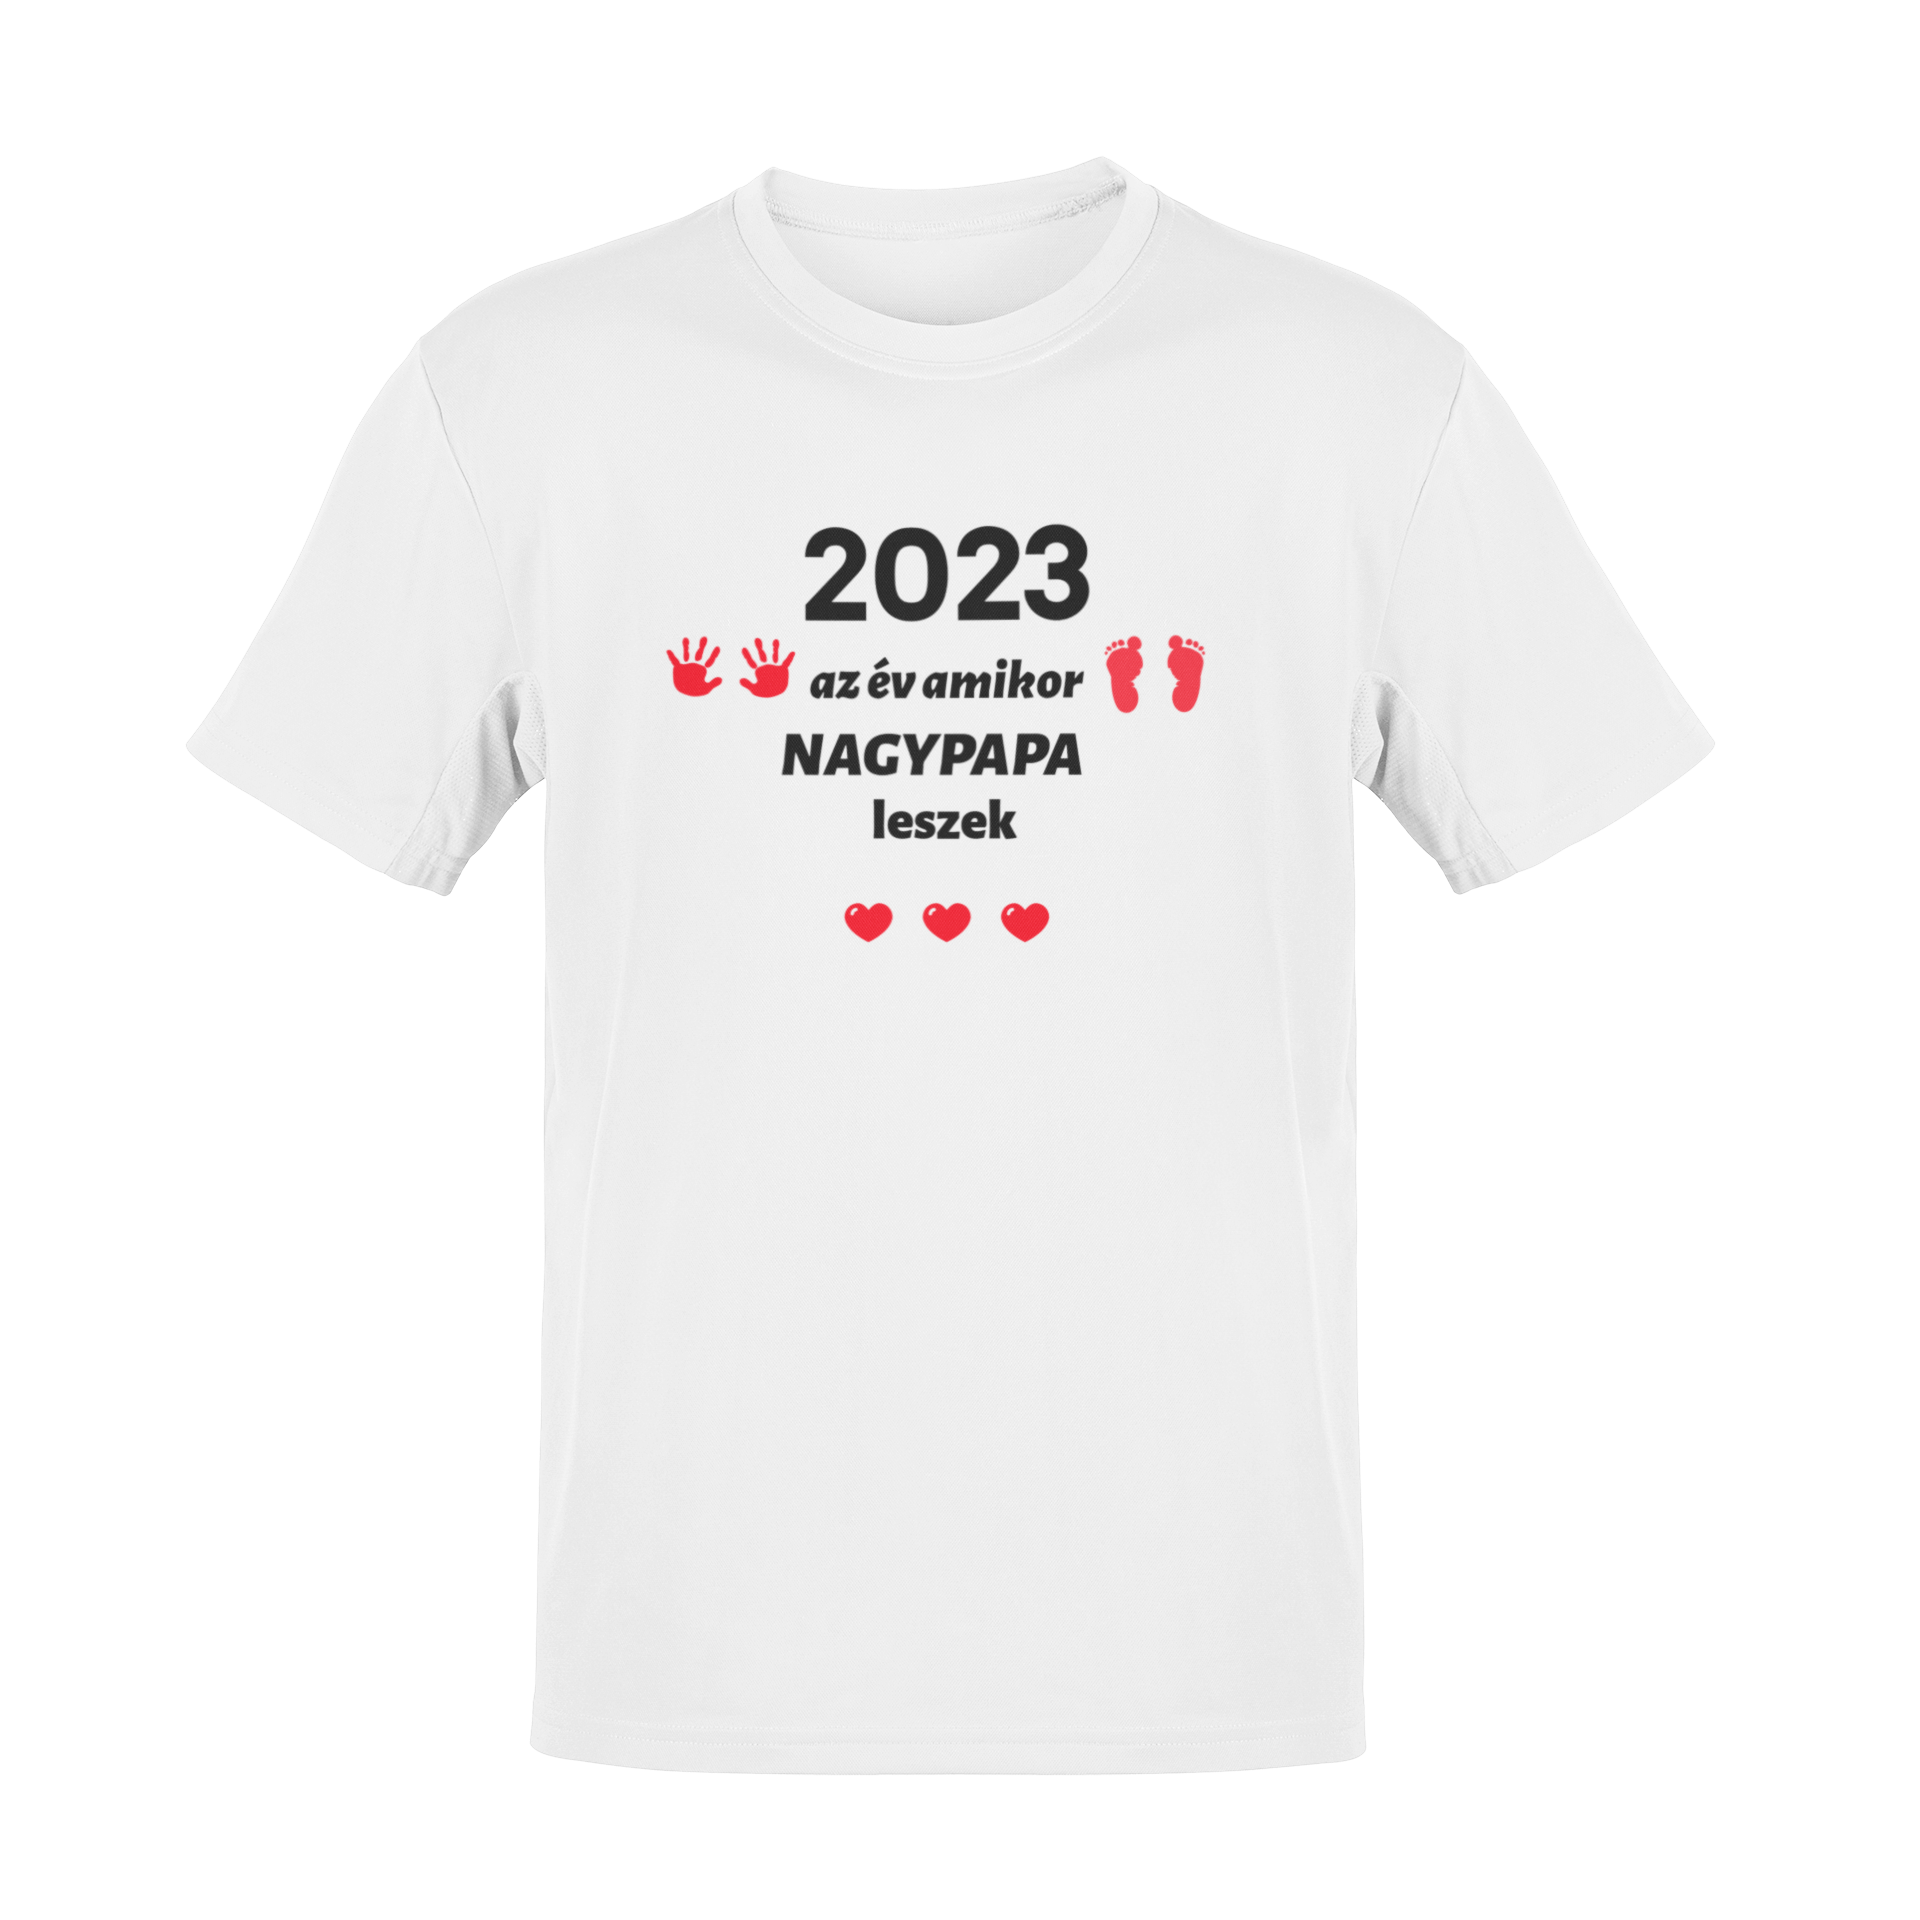 2023 az év amikor NAGYPAPA leszek póló (piros minta)